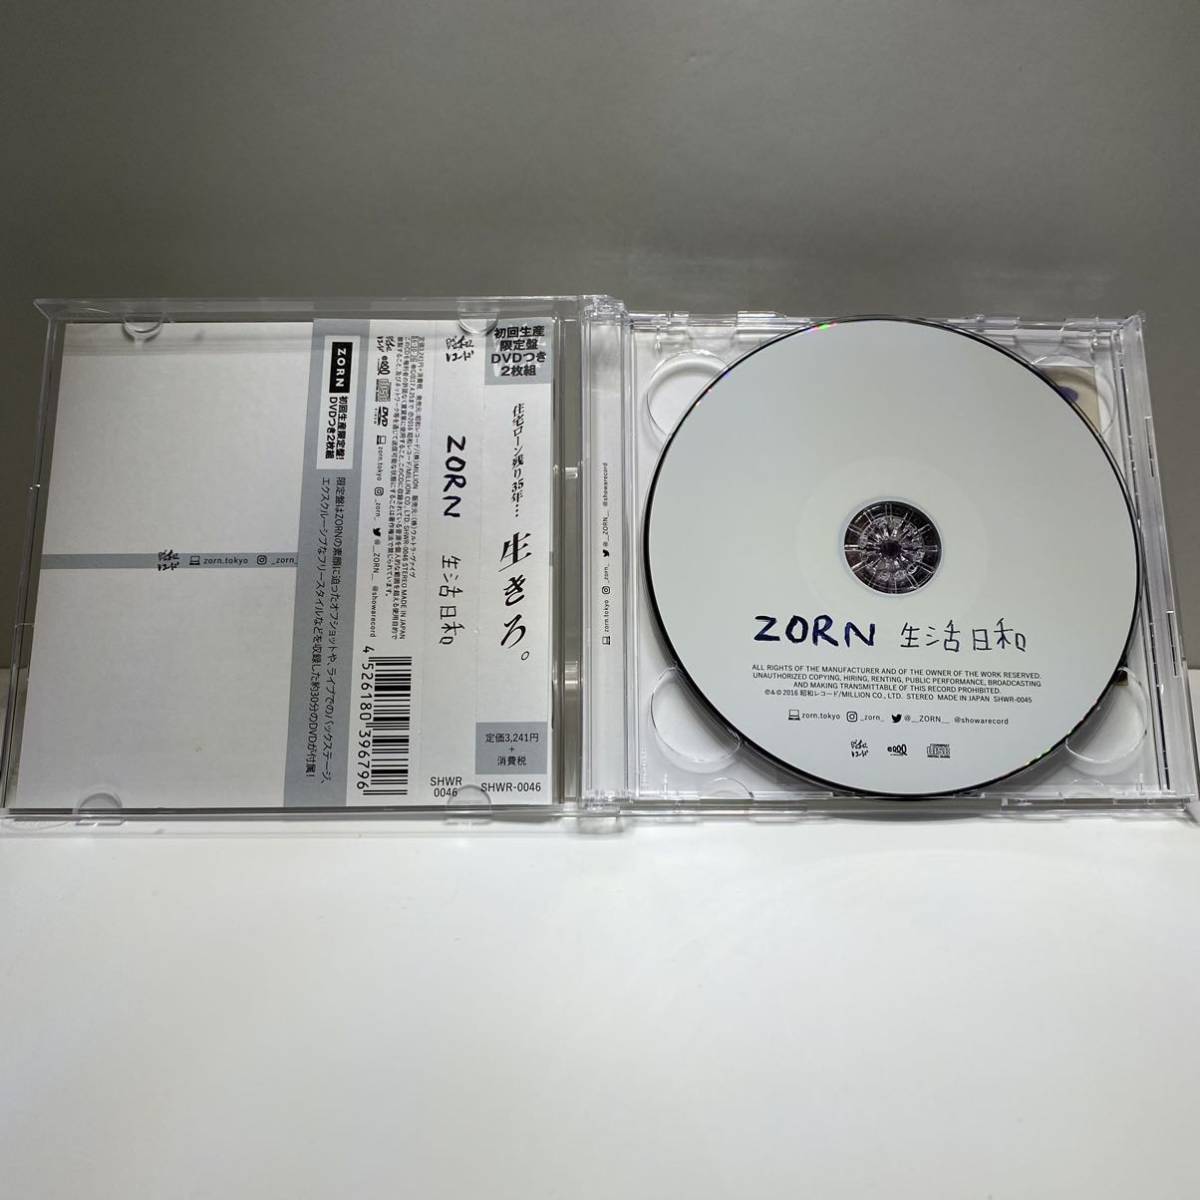 【送料無料】 ZORN 生活日和(生産数限定盤) 初回限定盤 2DISC(CD+DVD) ZONE THE DARKNESS 帯付き